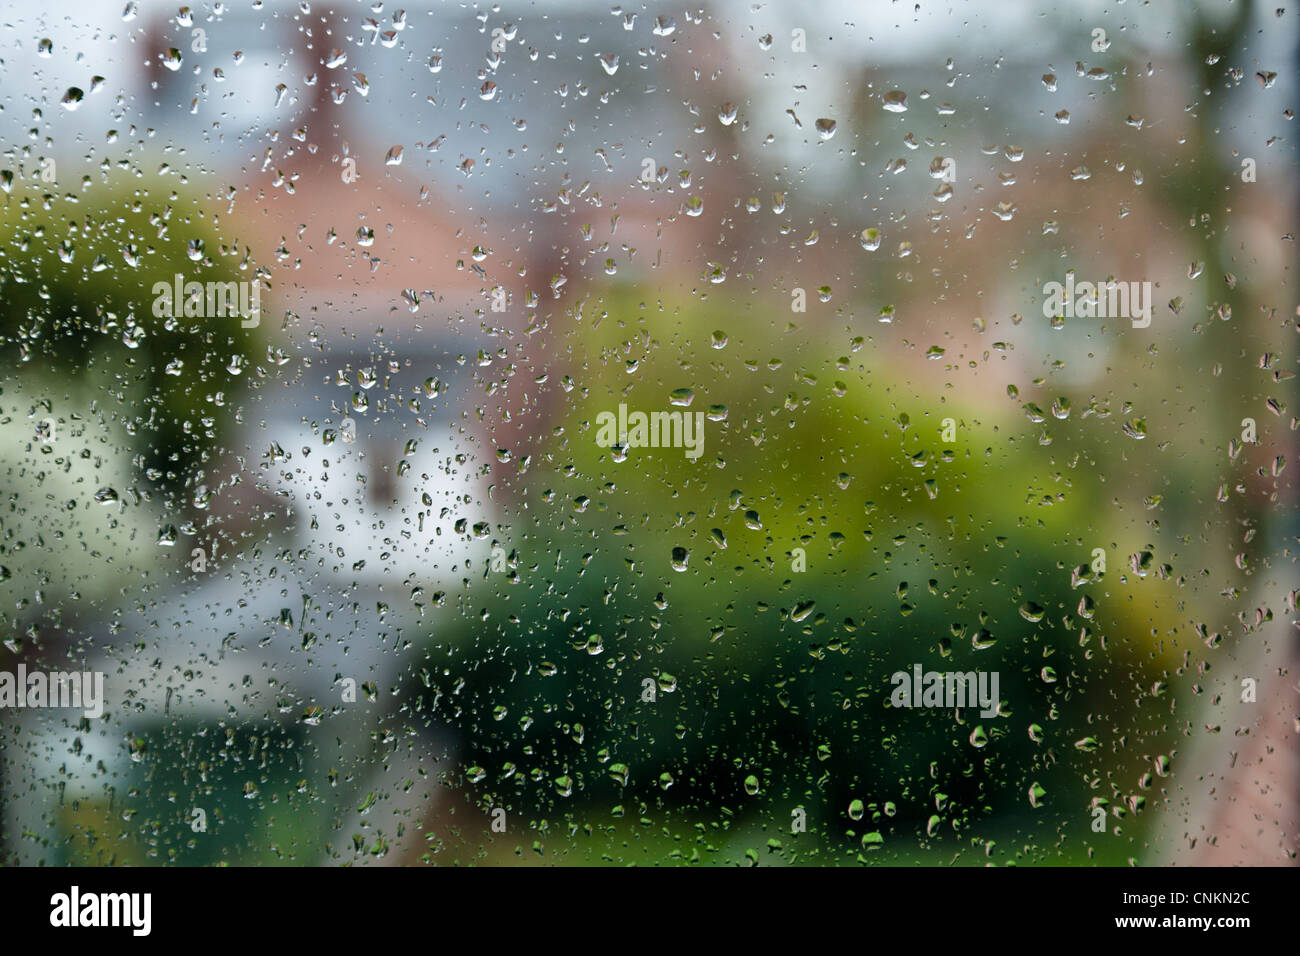 Jour de pluie. Gouttes de pluie sur une fenêtre avec la distance hors focus, England, UK Banque D'Images